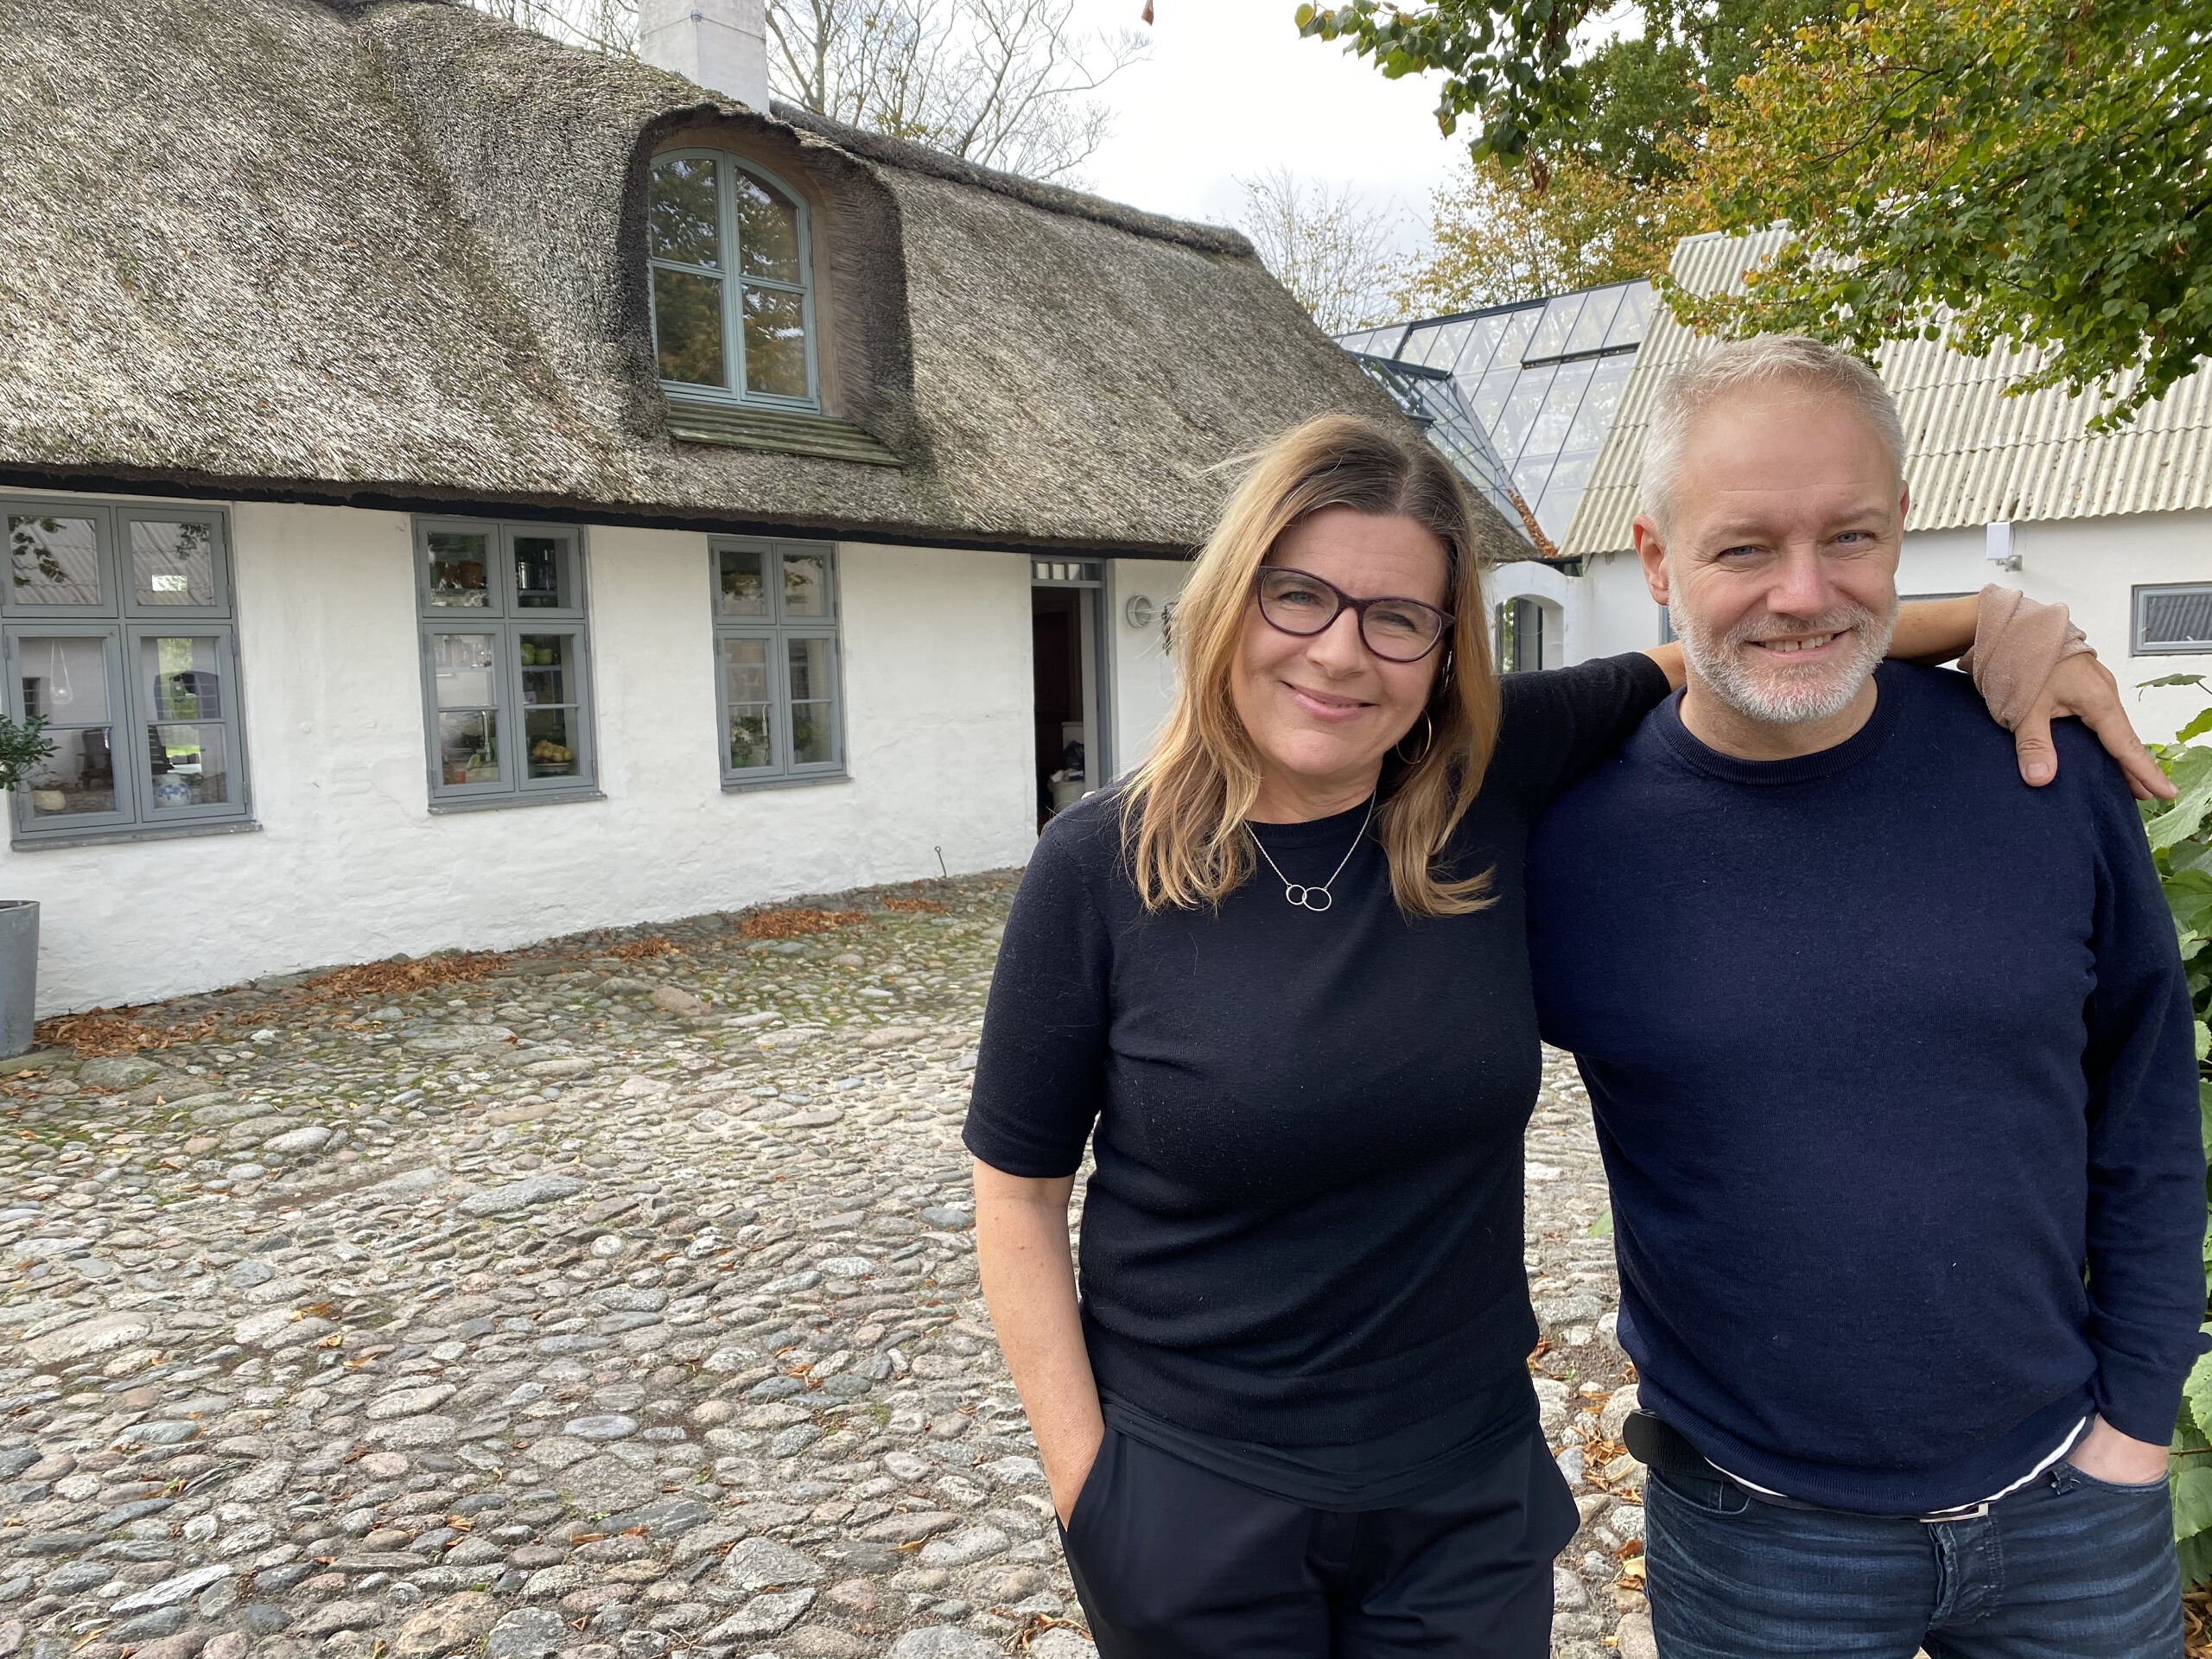 Corona-tanker fik forfatter og journalist til at tage springet: Nu åbner de drømme-sted på Læsø